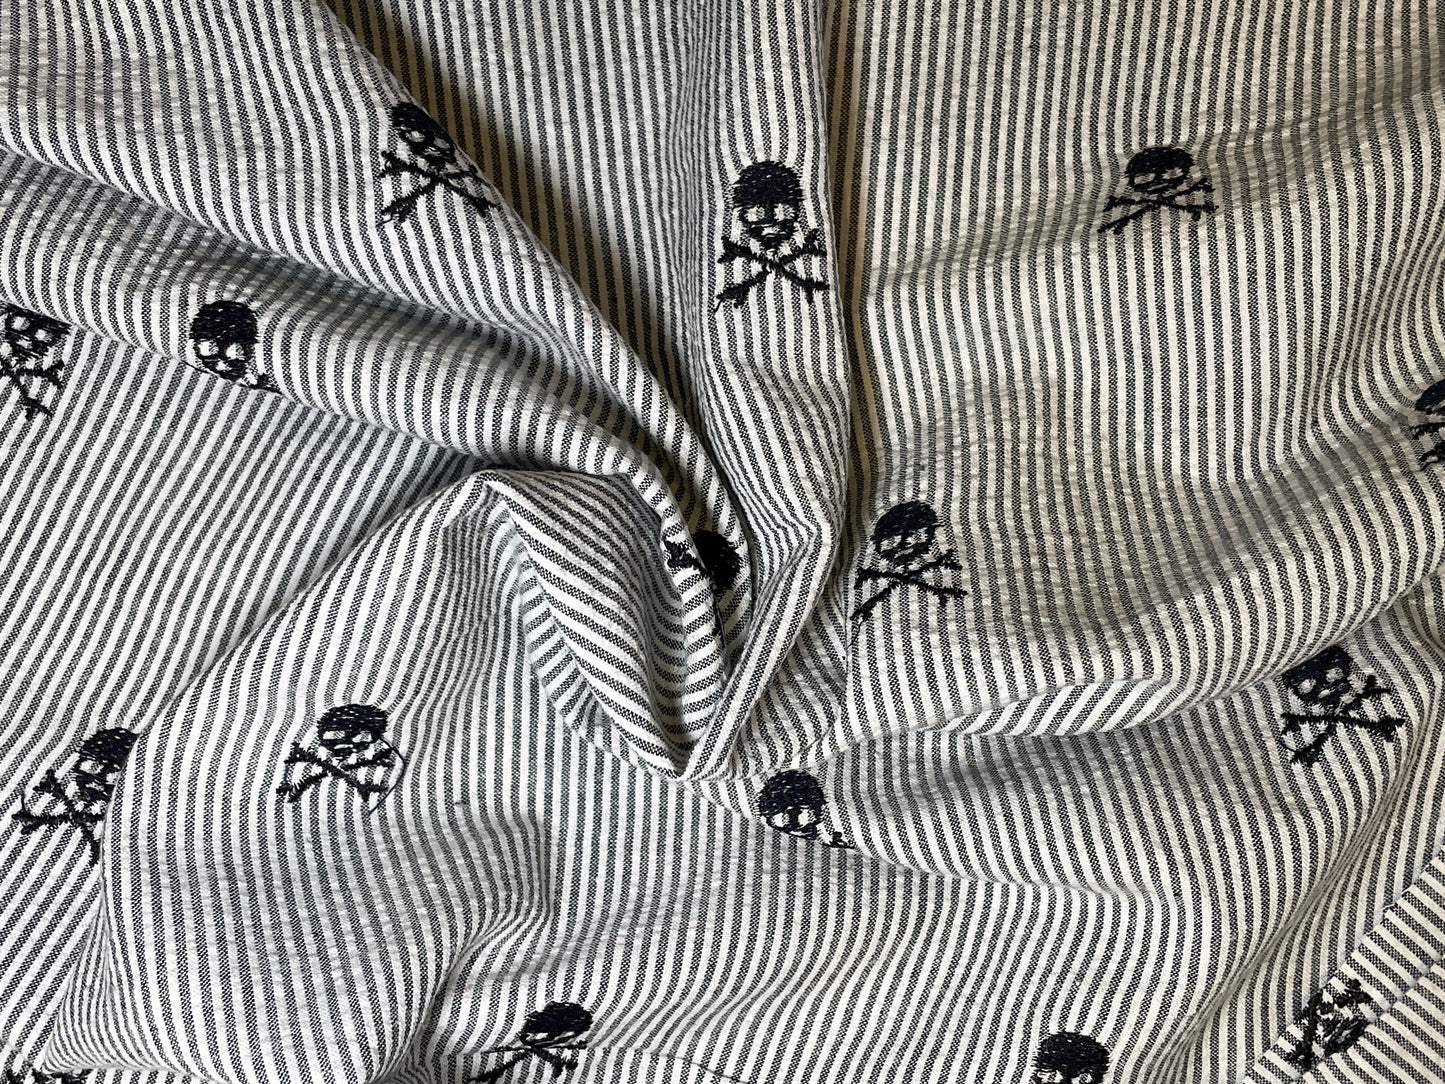 Blackbeard's Seersucker - Black & White pinstripe with Jolly Roger Skulls!